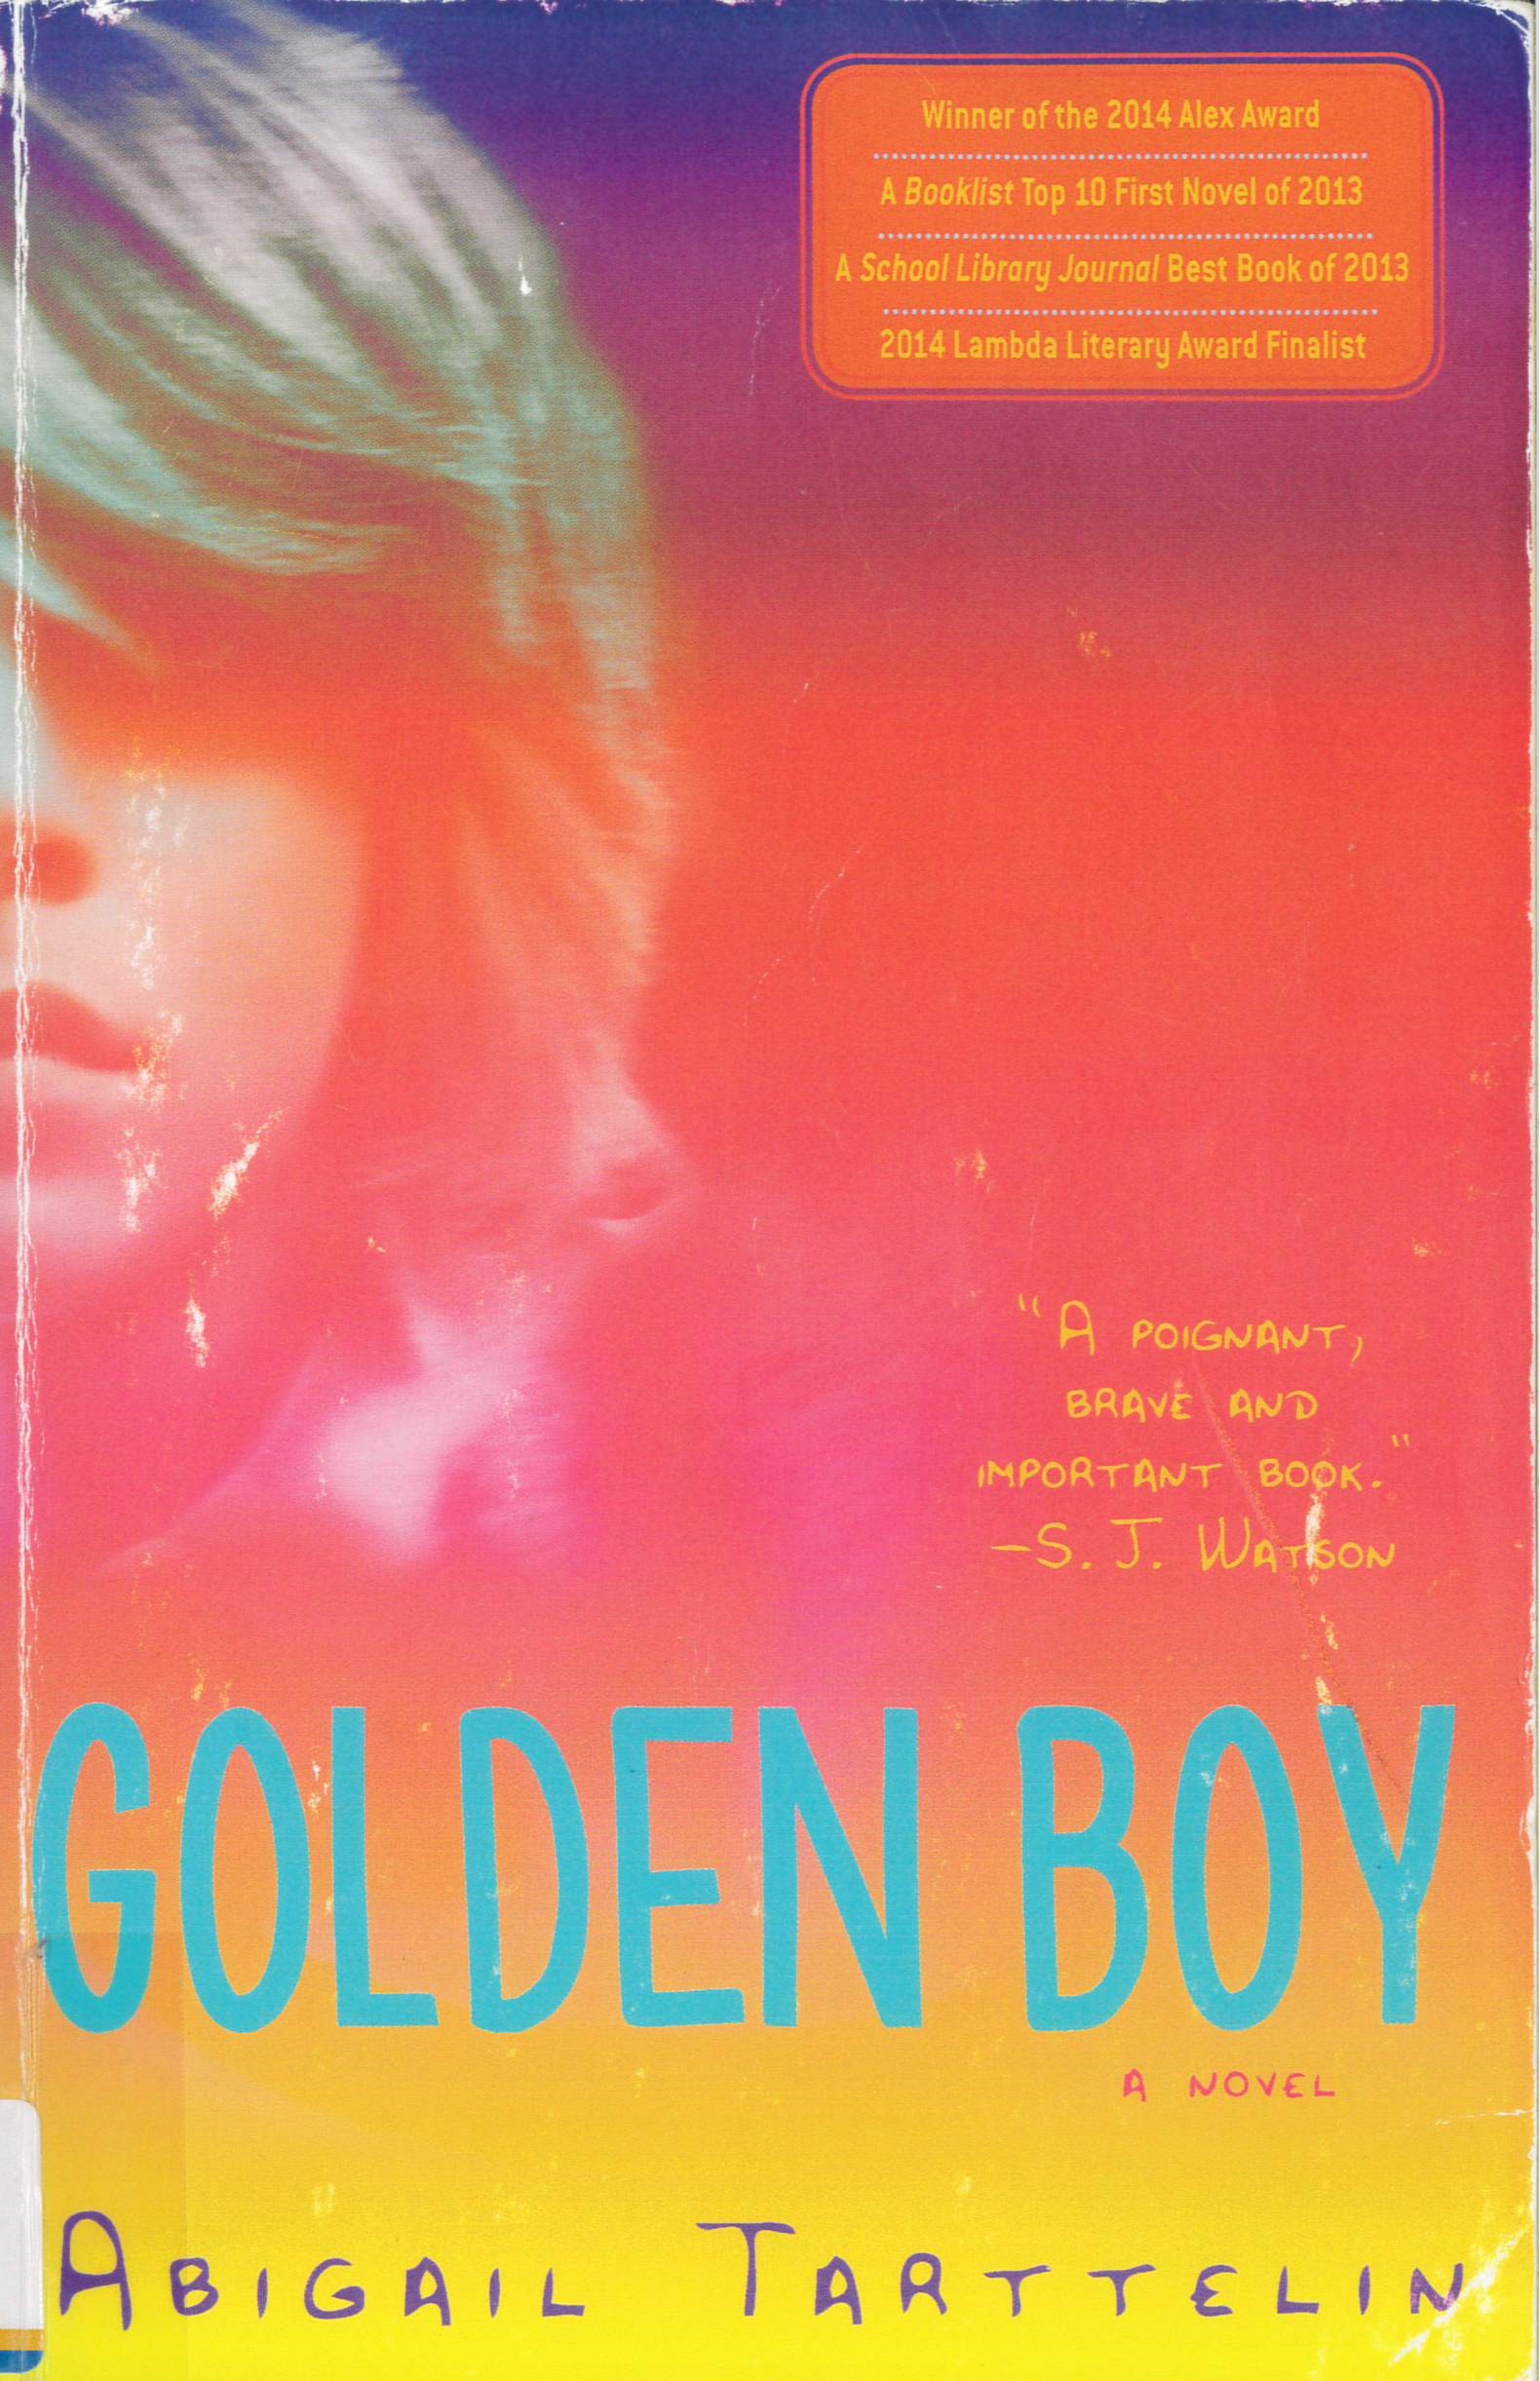 Golden boy : a novel /